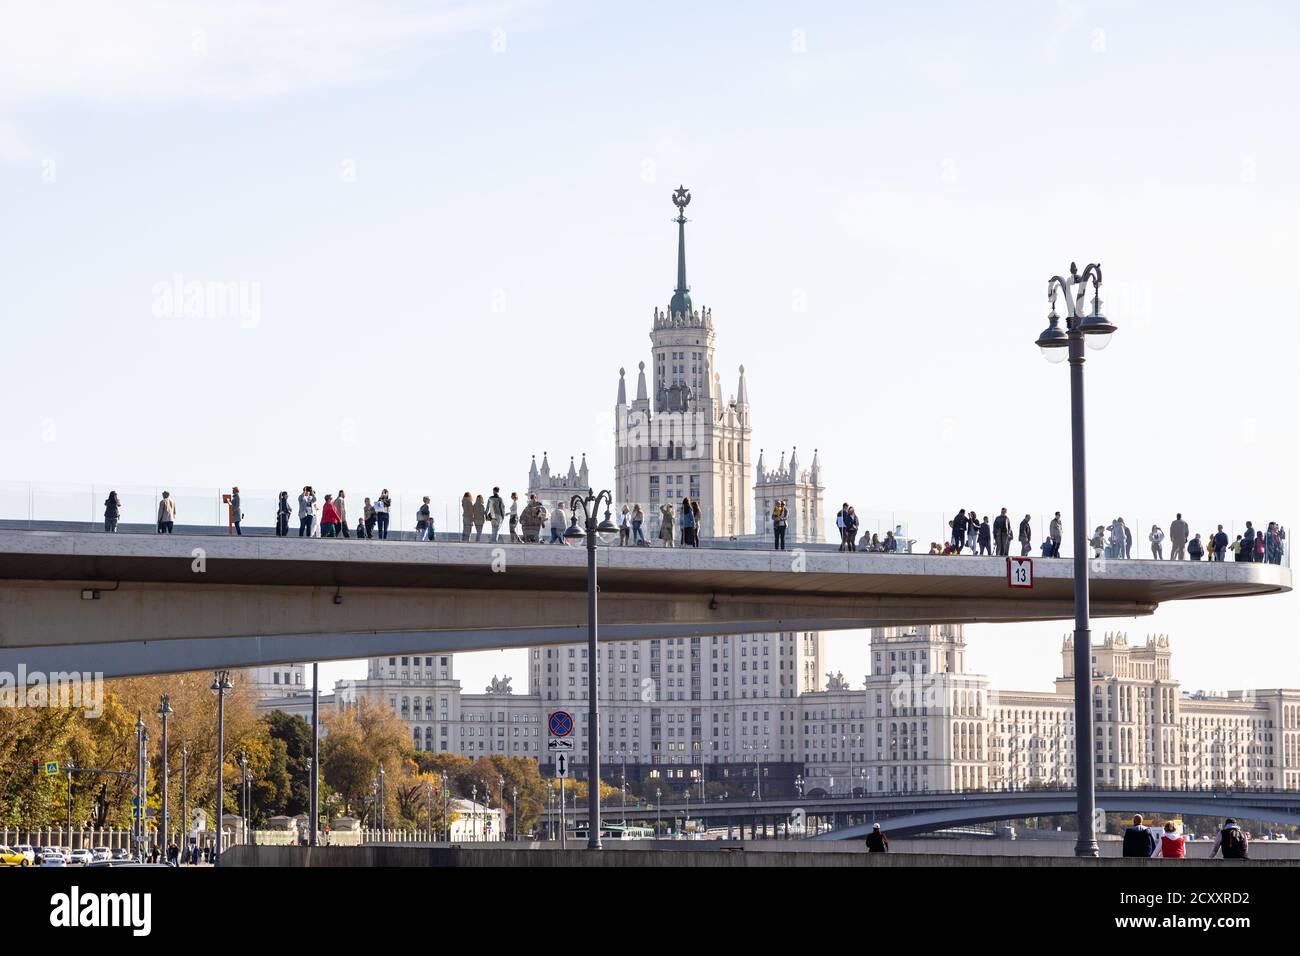 MOSCA, RUSSIA - 27 SETTEMBRE 2020: Il Ponte galleggiante con i turisti vicino al Parco paesaggistico di Zaryadye e all'alto edificio Kotelnicheskaya Embankment Foto Stock